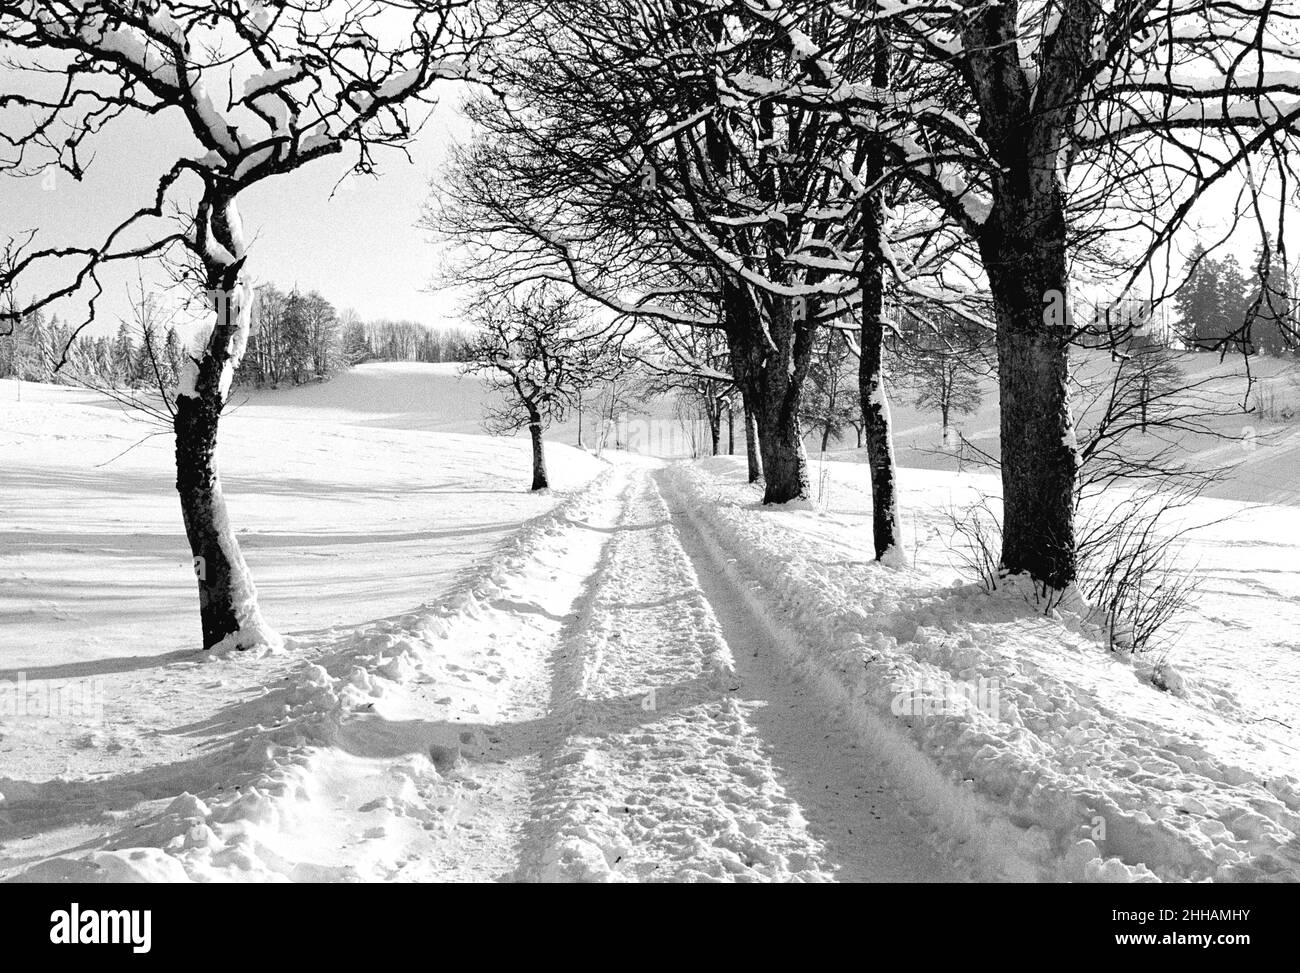 Schwarz-weiß-Foto eines Weges in einem schneebedeckten Feld, das von einem Kiefernwald umgeben ist, Pontarlier, Franche-Comté, Jura, Frankreich, Europa, 2007. Stockfoto